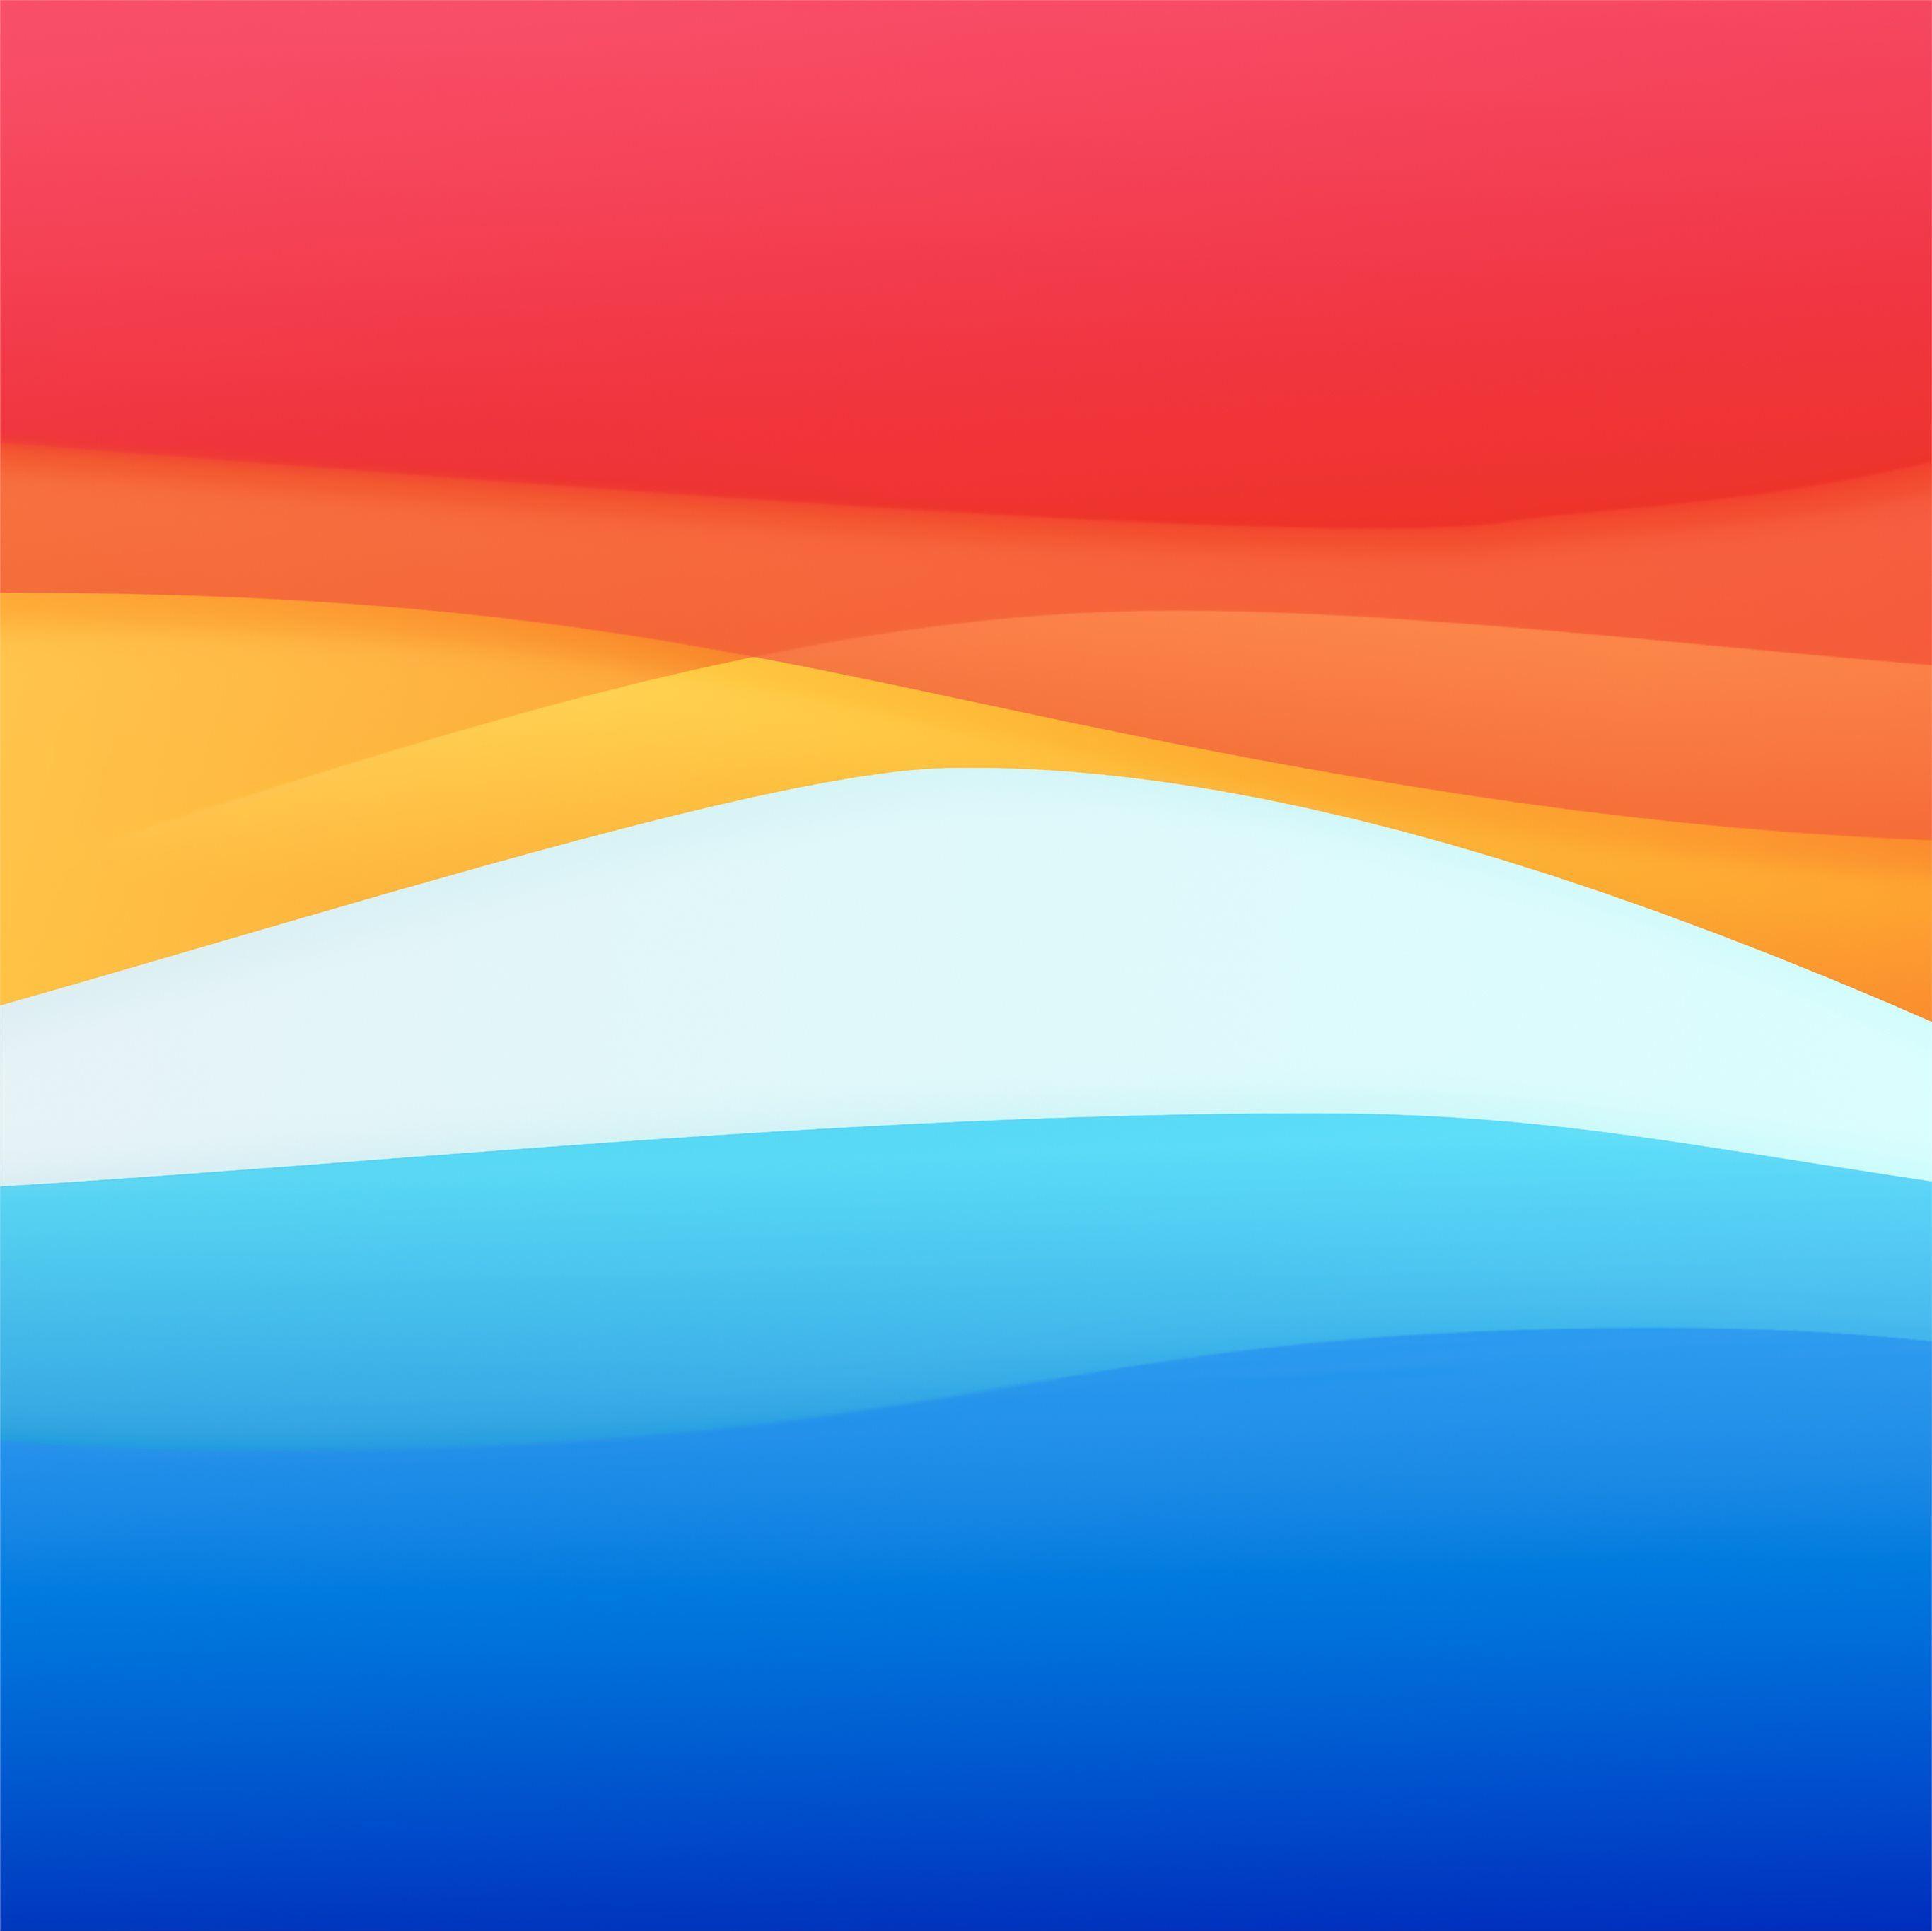 Macbook Inspire Abstract 8k iPad Pro Wallpaper